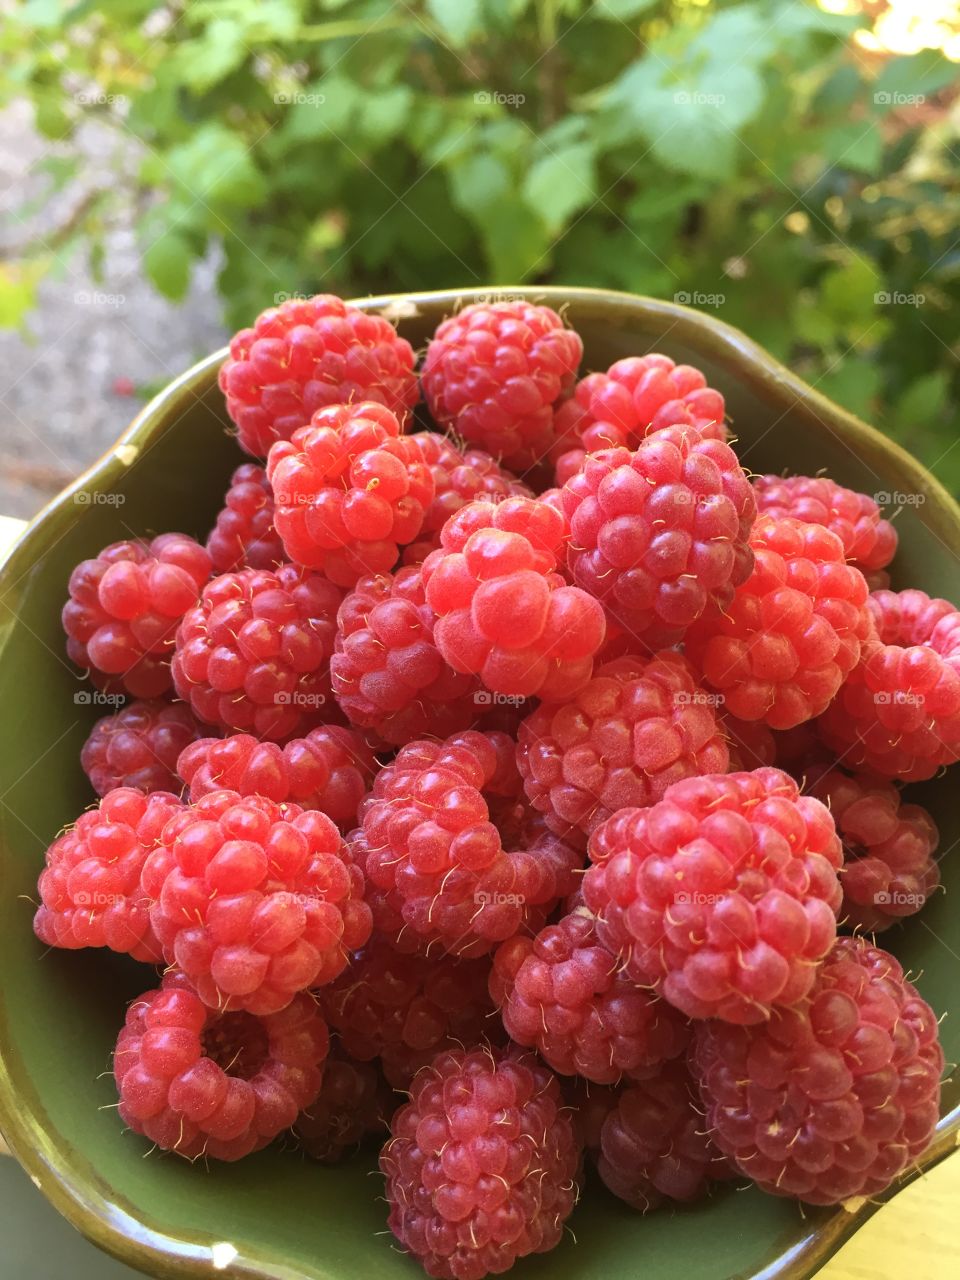 Raspberry crop 